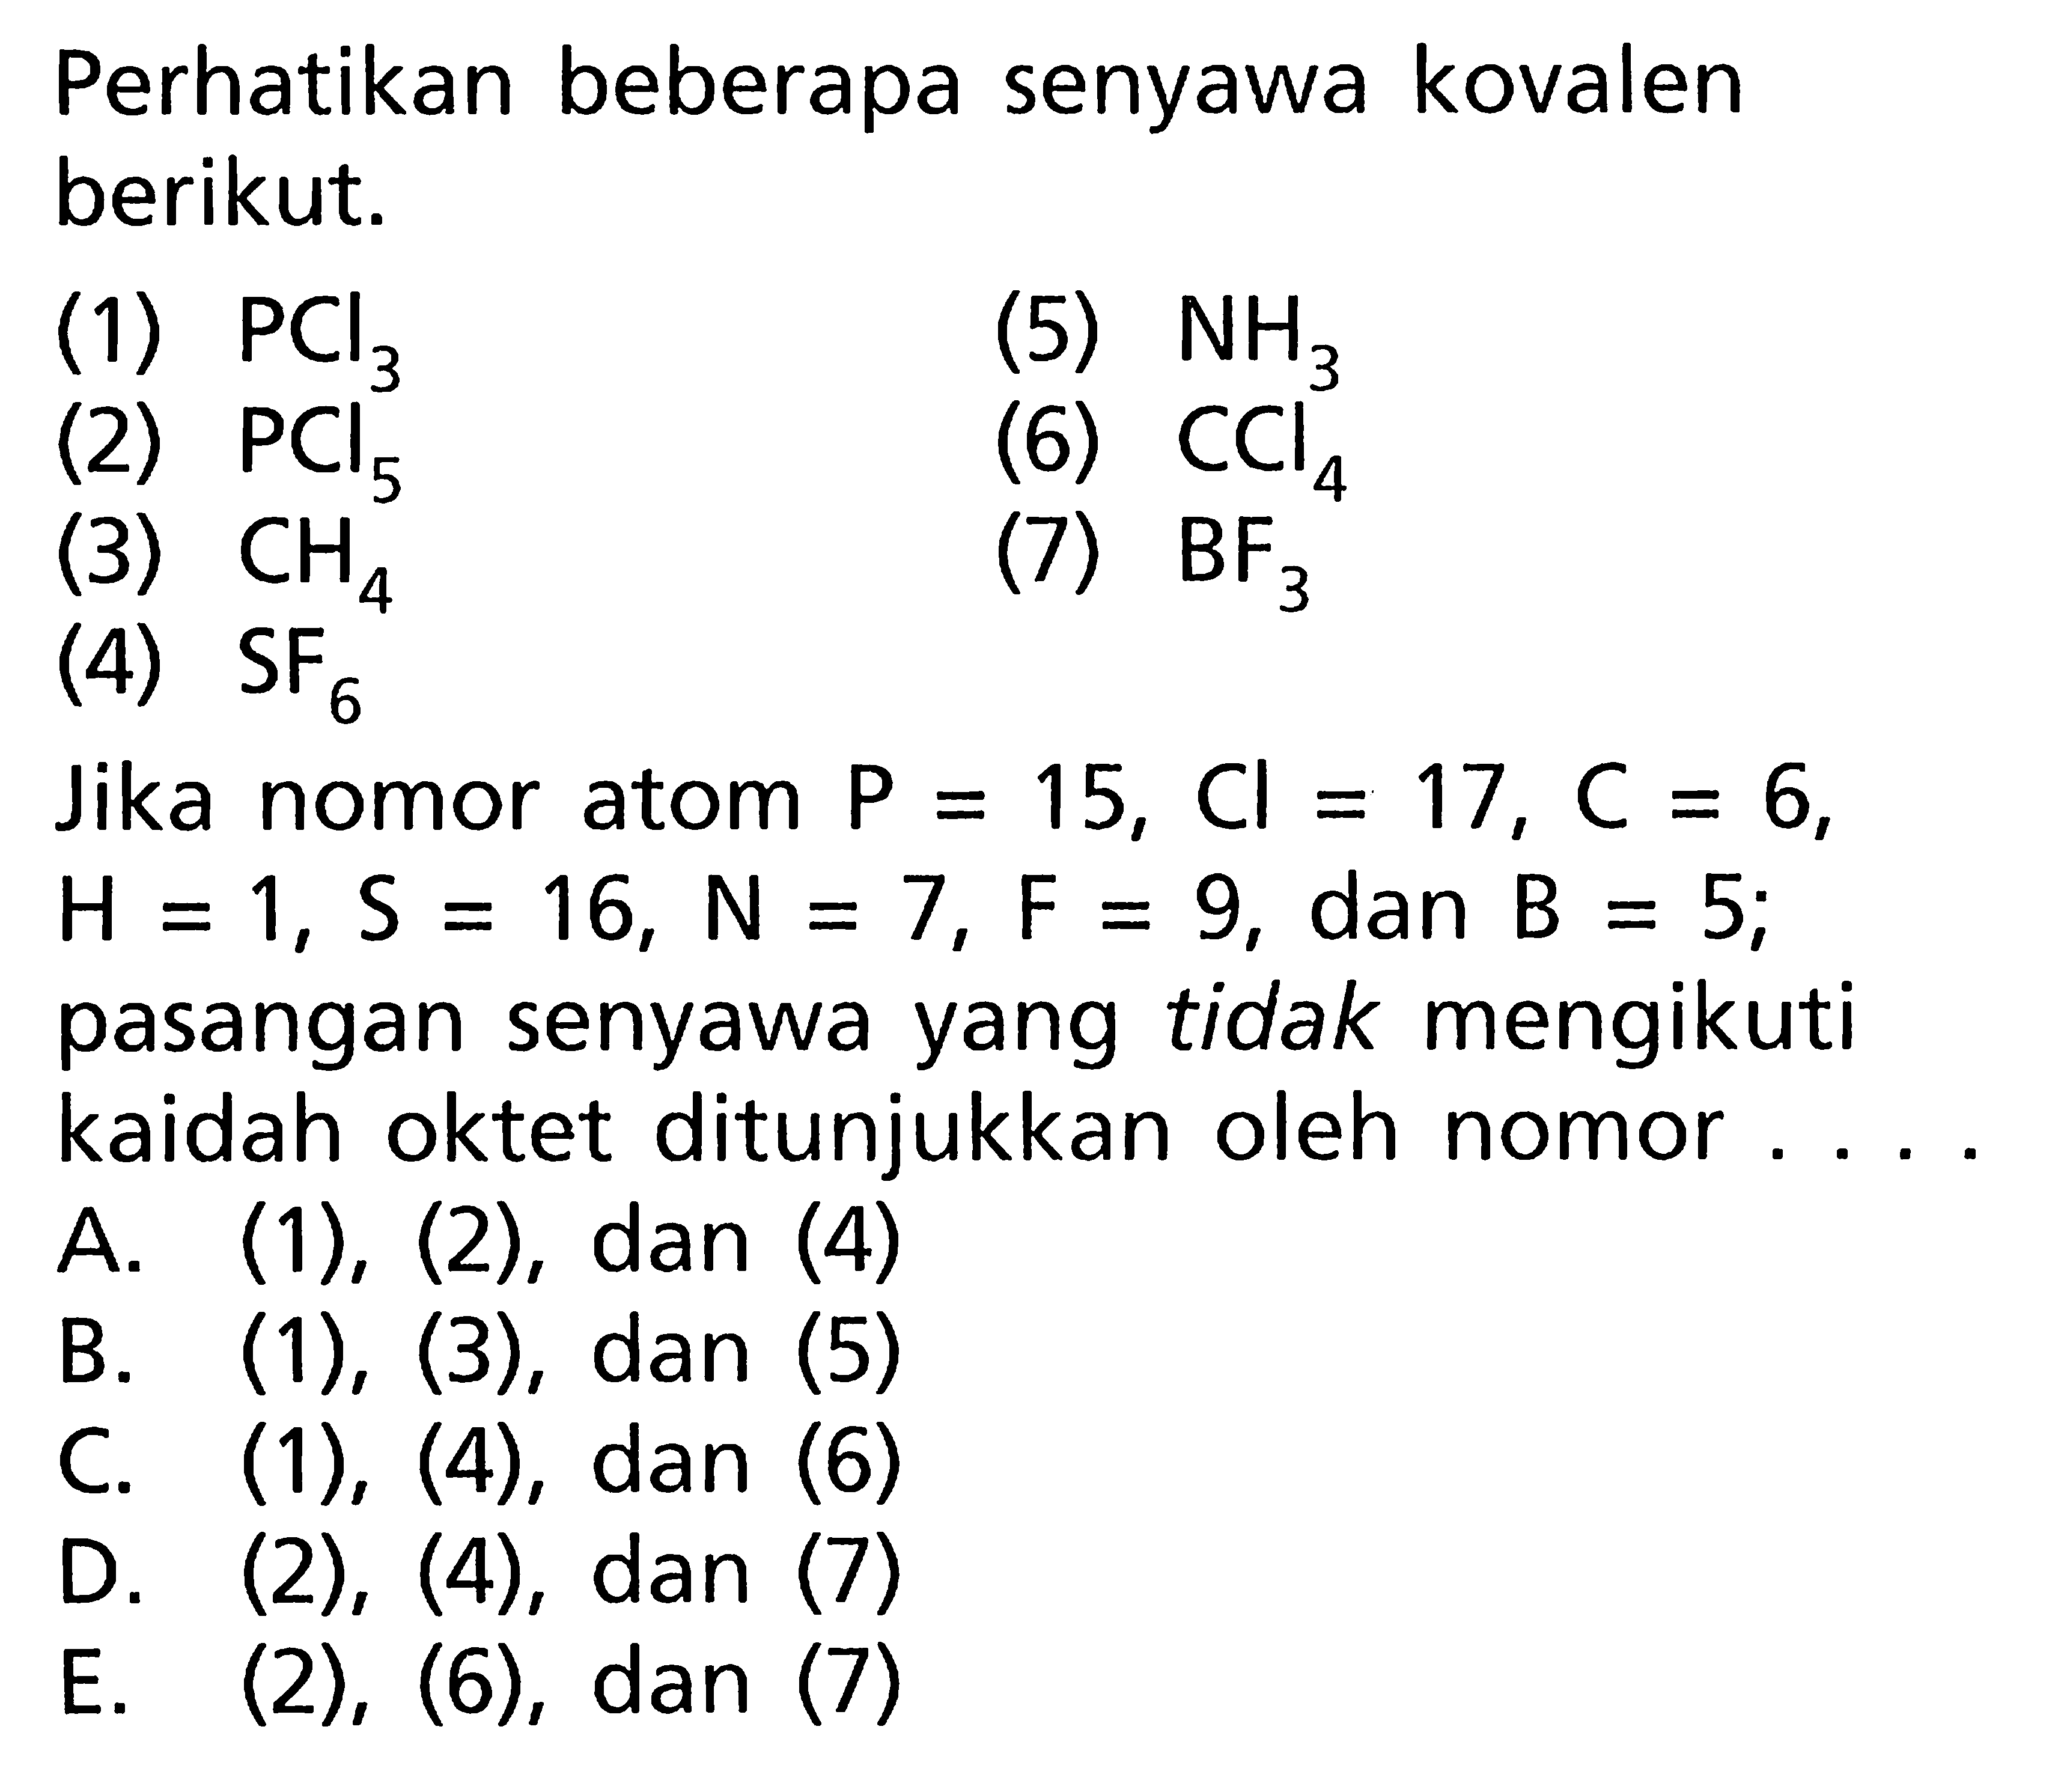 Perhatikan beberapa senyawa kovalen berikut.(1)  PCl3 (2)  PCl5 (3)  CH4 (4)  SF6 (5)  NH3 (6)  CCl4(7)  BF3 Jika nomor atom P = 15, Cl = 17, C = 6, H = 1, S = 16, N = 7, F = 9, dan B = 5; pasangan senyawa yang tidak mengikuti kaidah oktet ditunjukkan oleh nomor... .